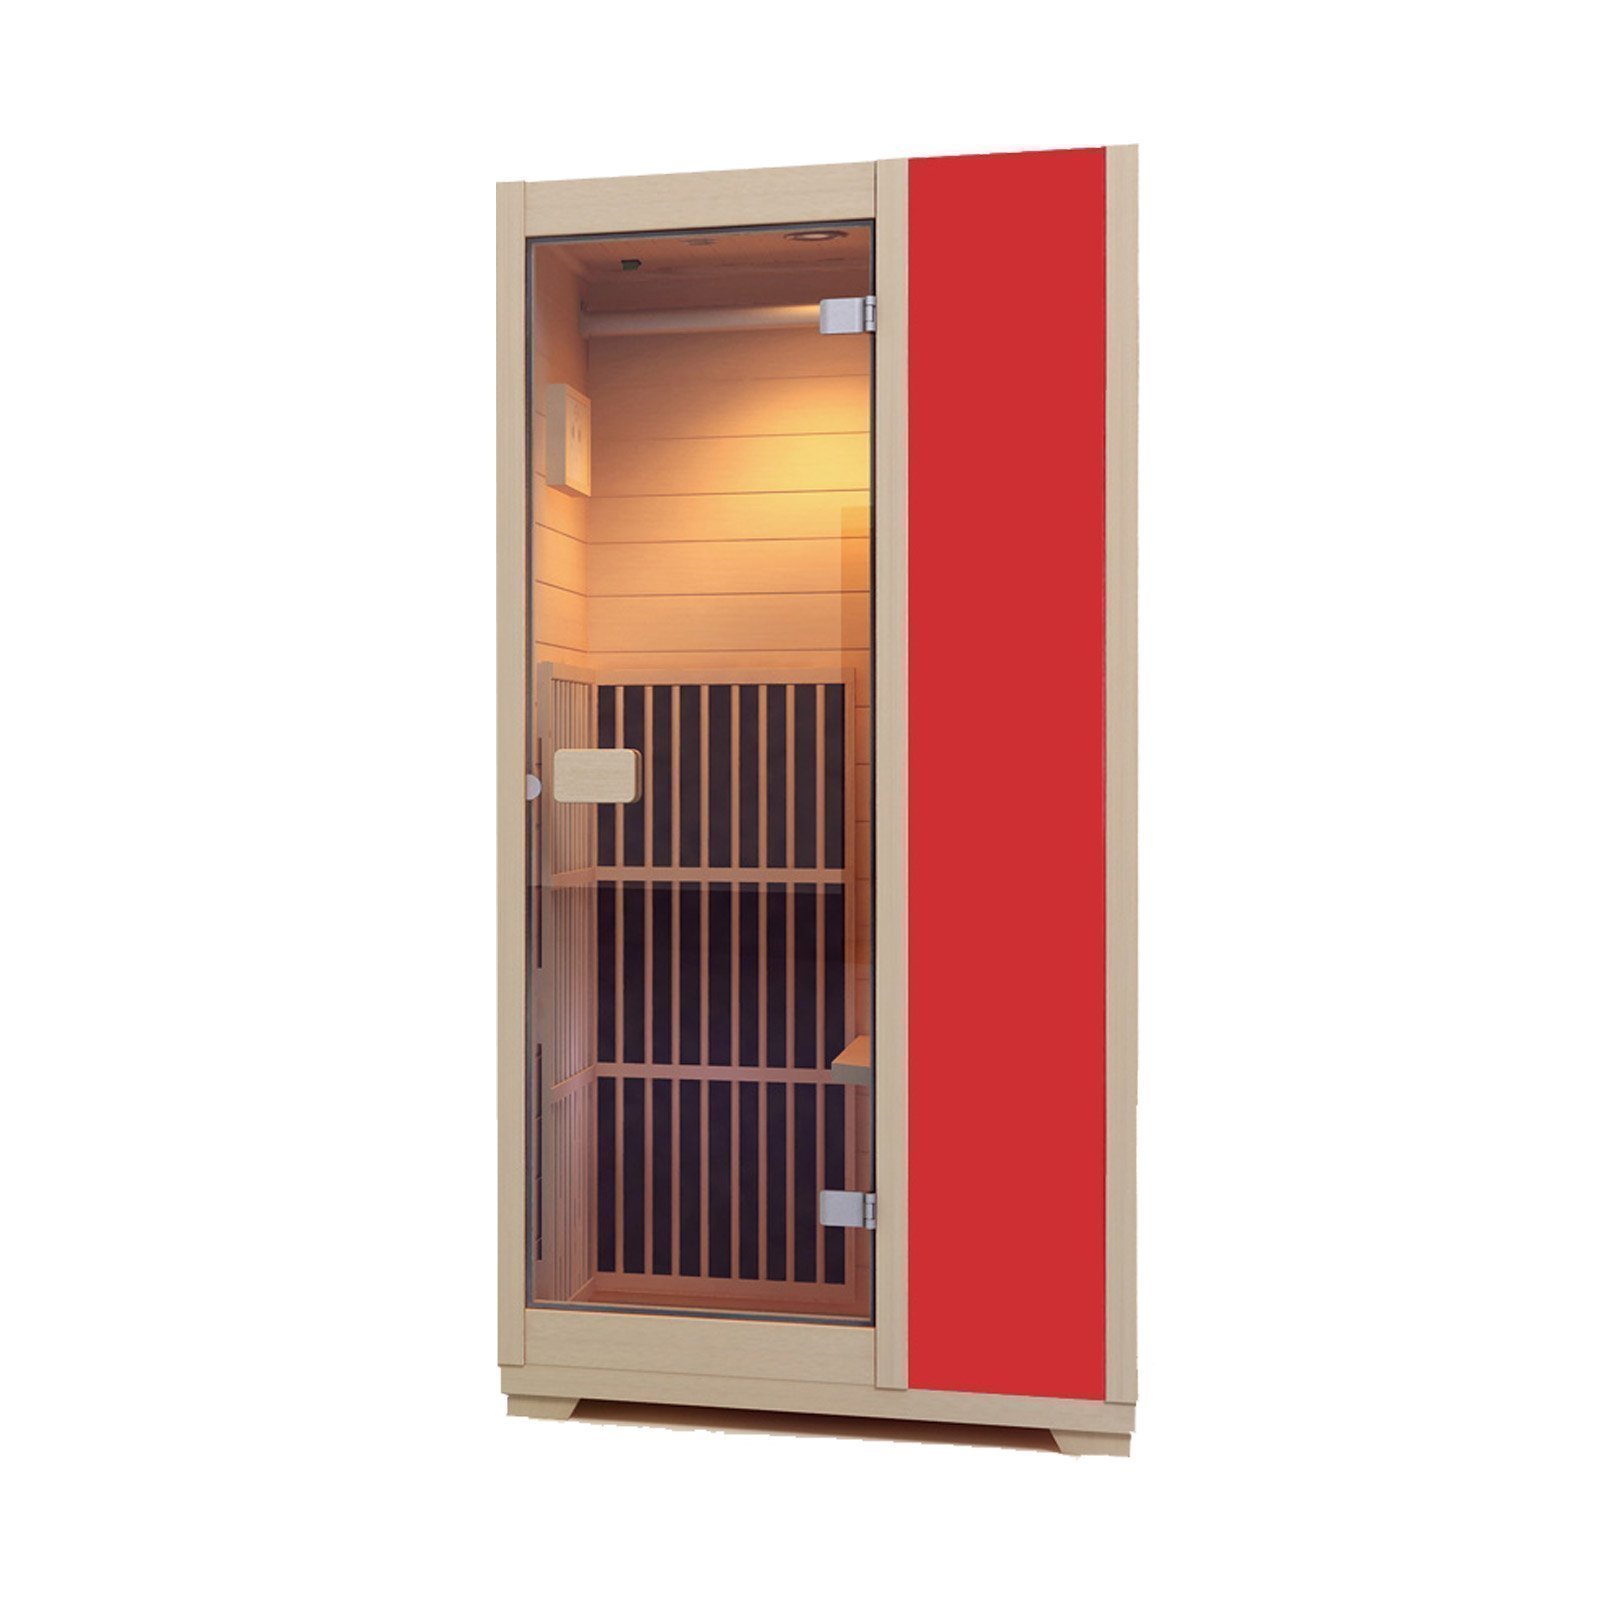 New Low EMF Zen 'Brighton' Infrared Sauna ZIV015 - Red